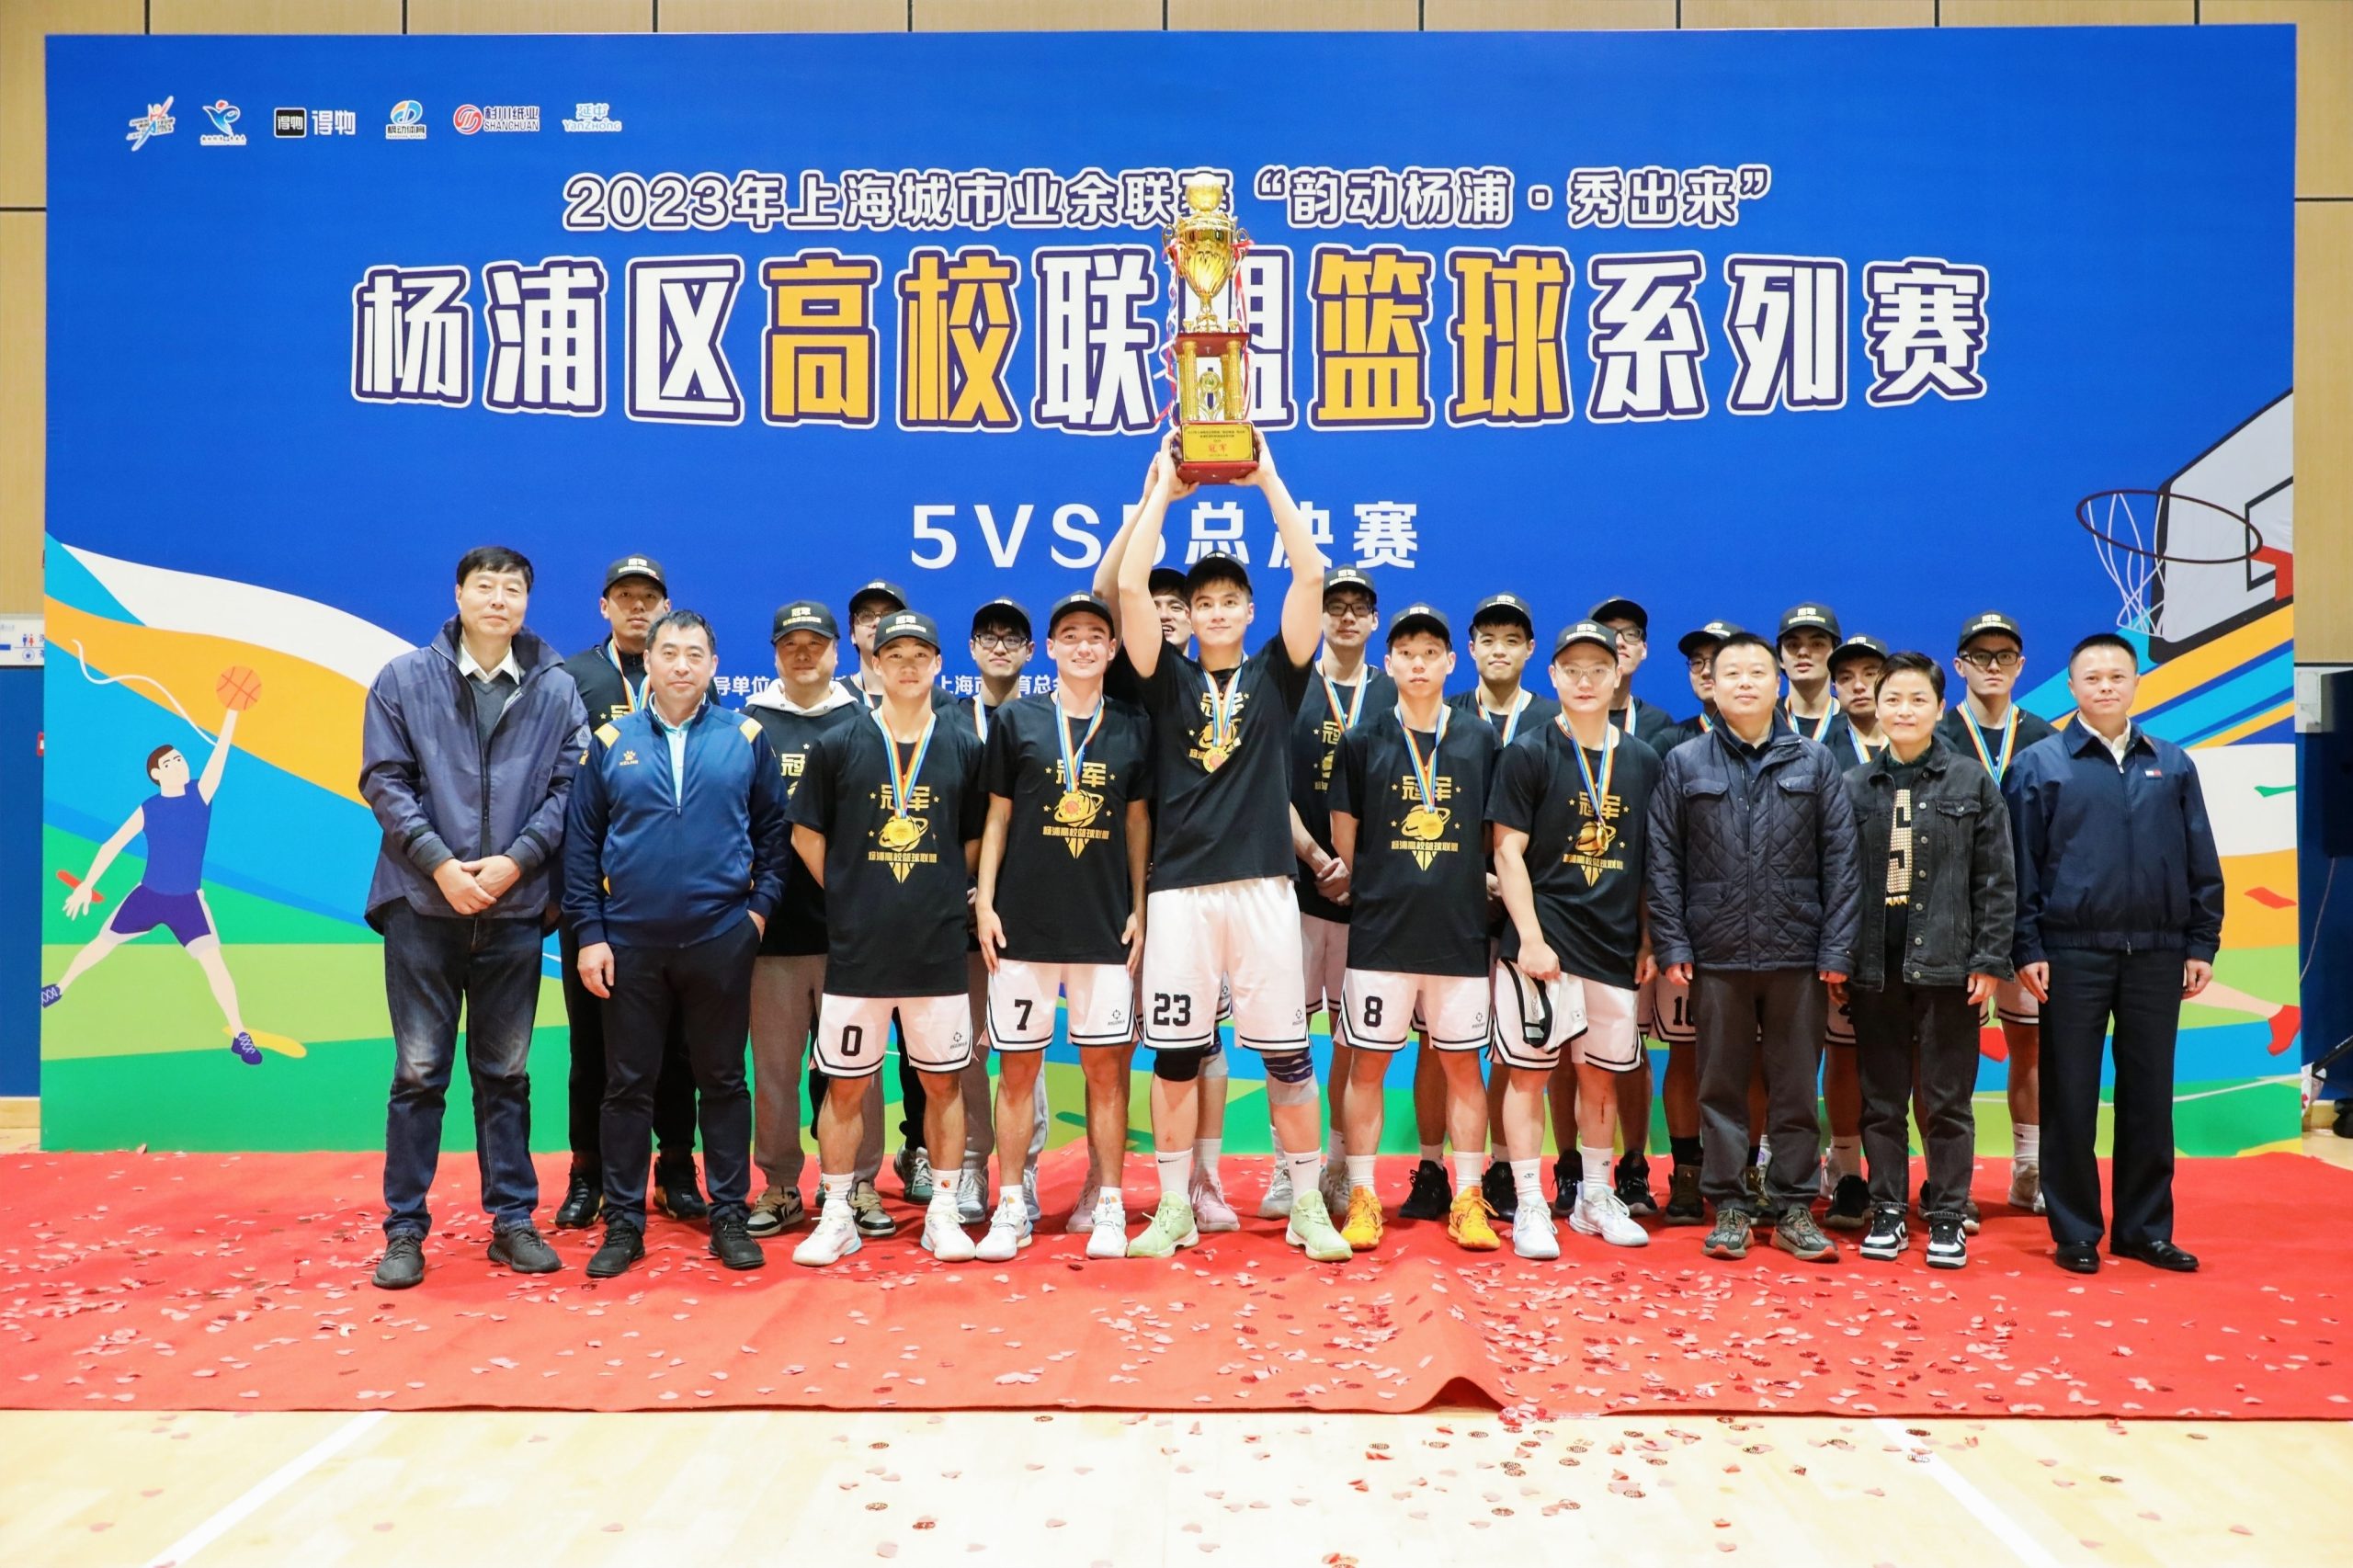 篮球比赛|杨浦区高校联盟篮球系列赛5VS5总决赛